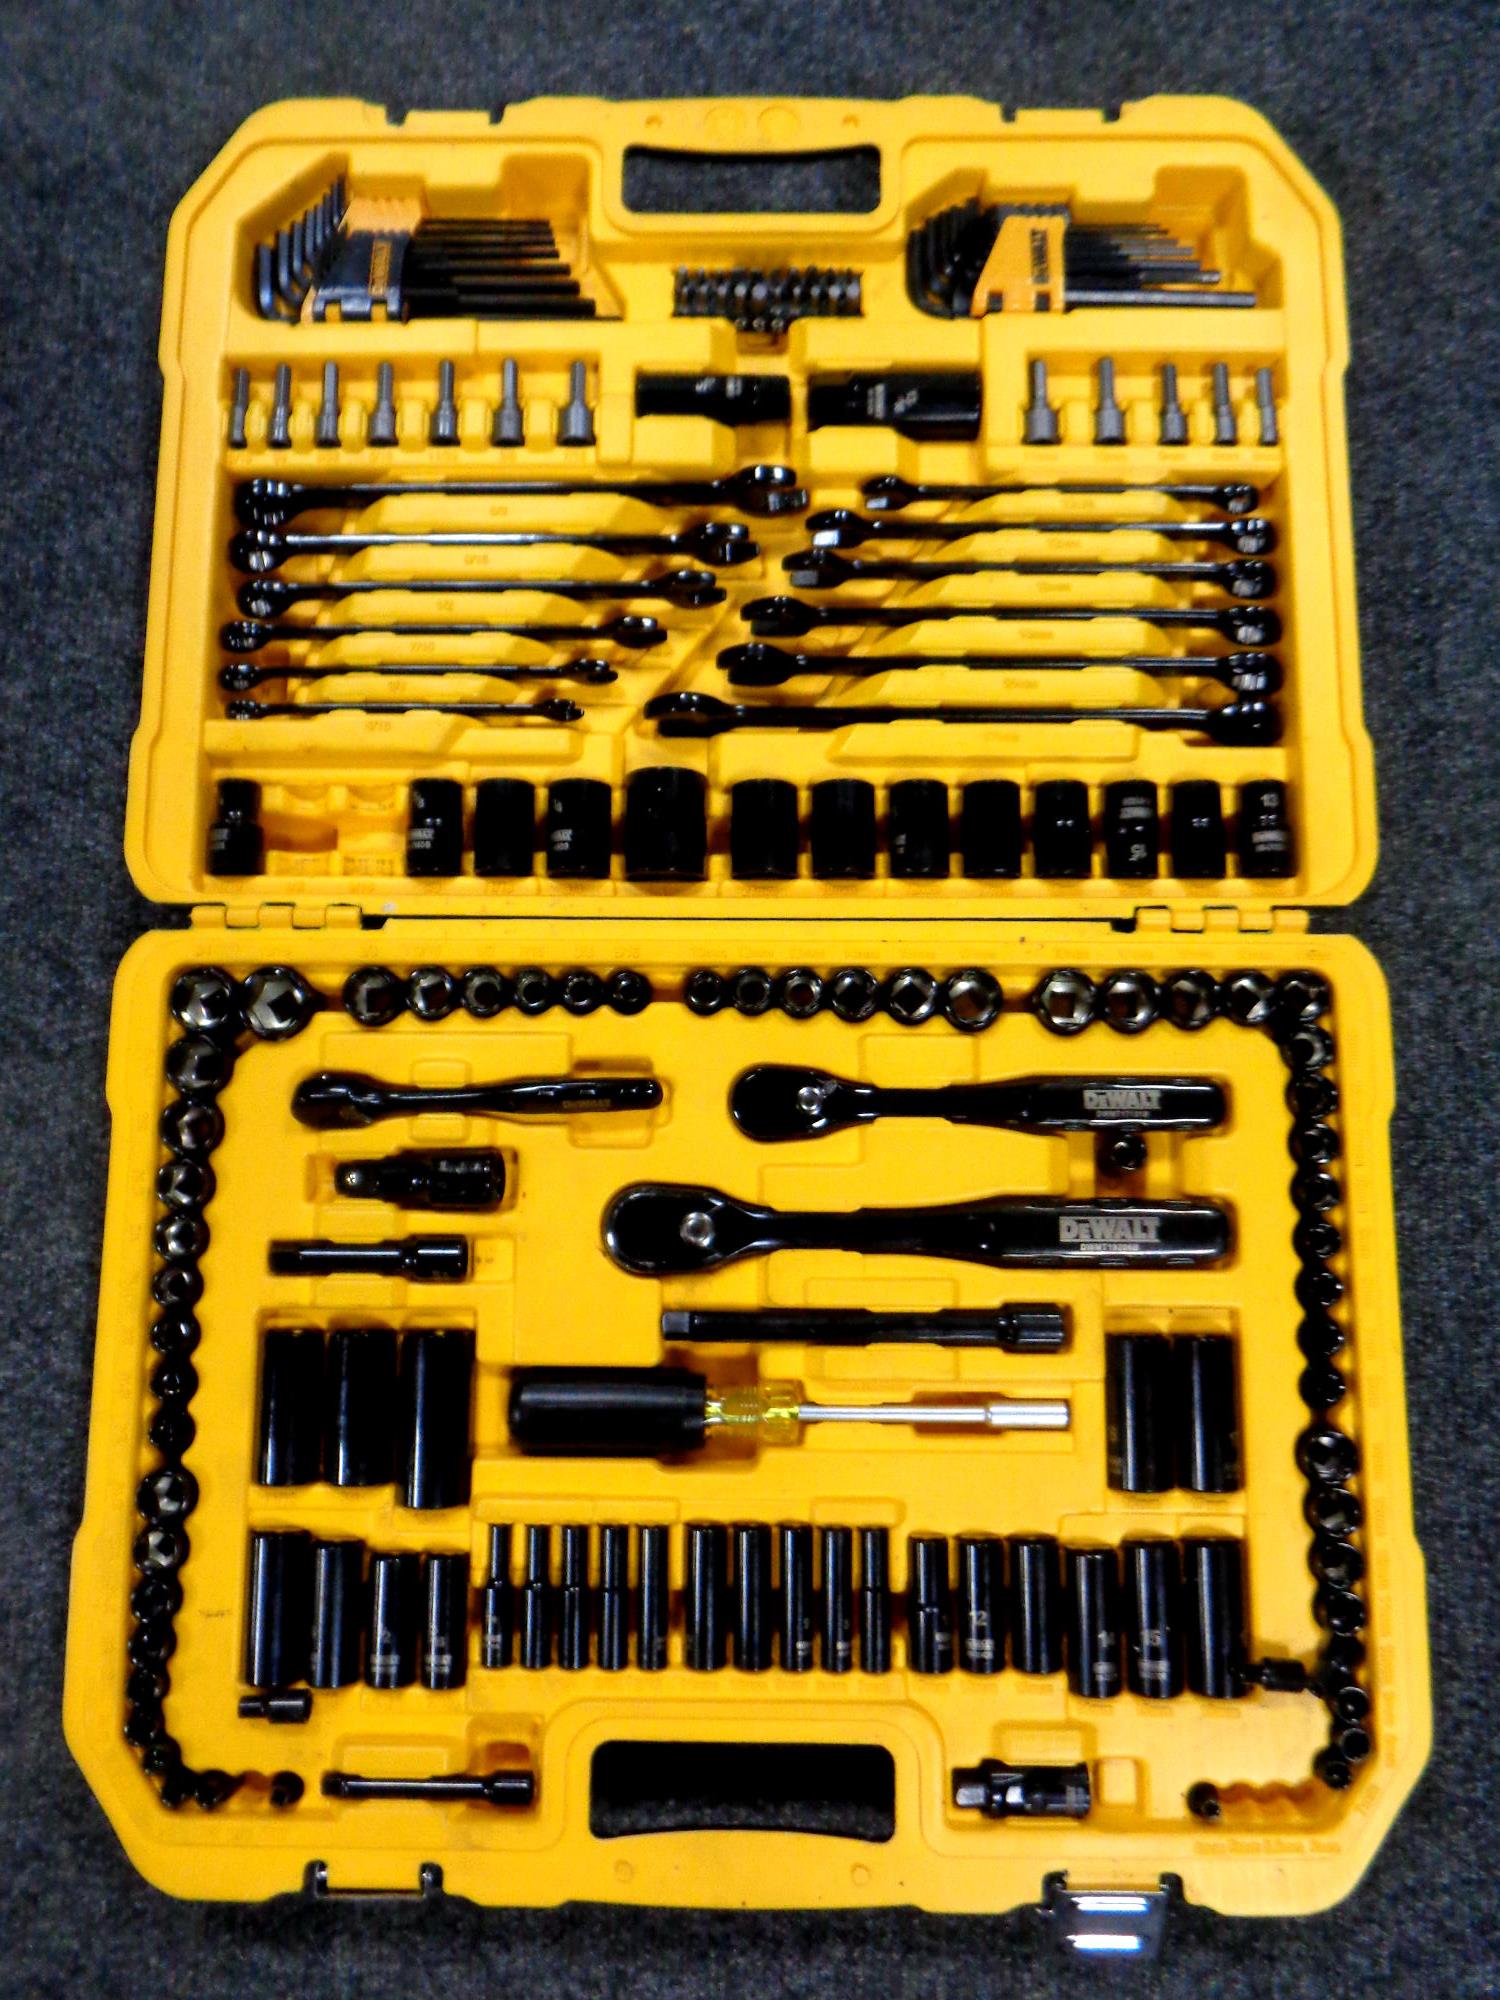 A cased Dewalt tool kit